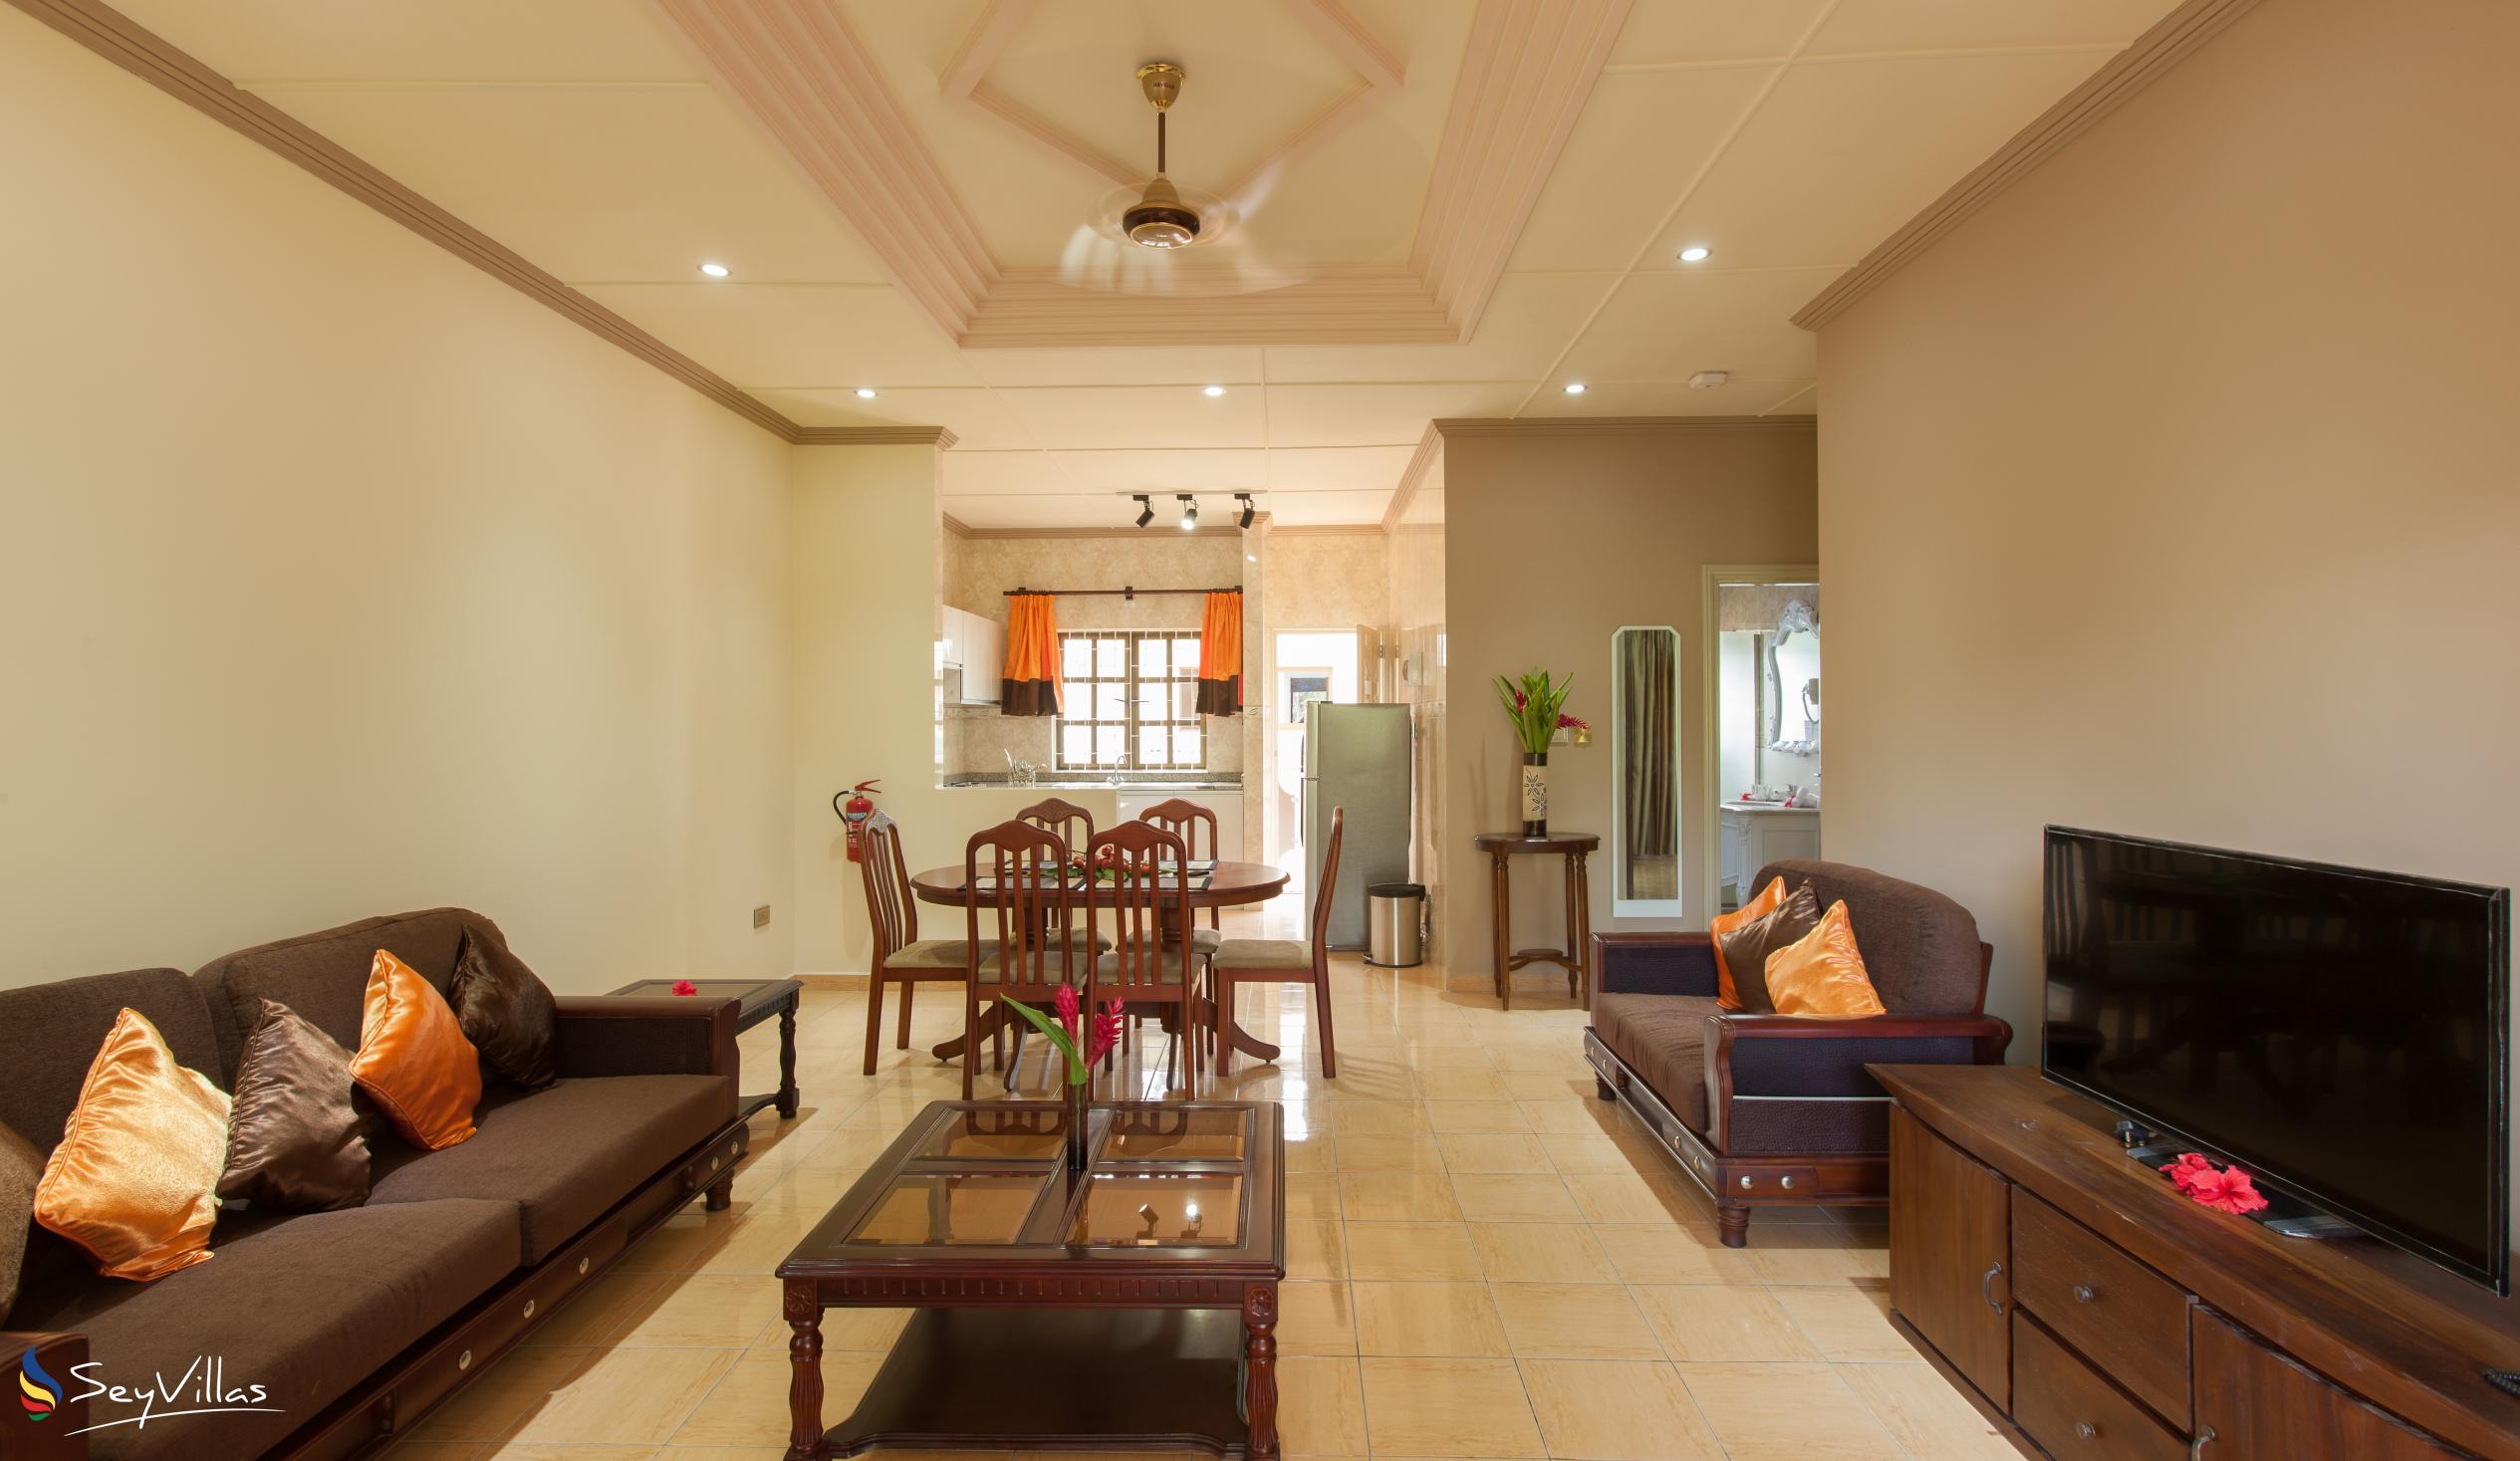 Foto 38: Chez Bea Villa - Appartamento con 2 camere - Praslin (Seychelles)